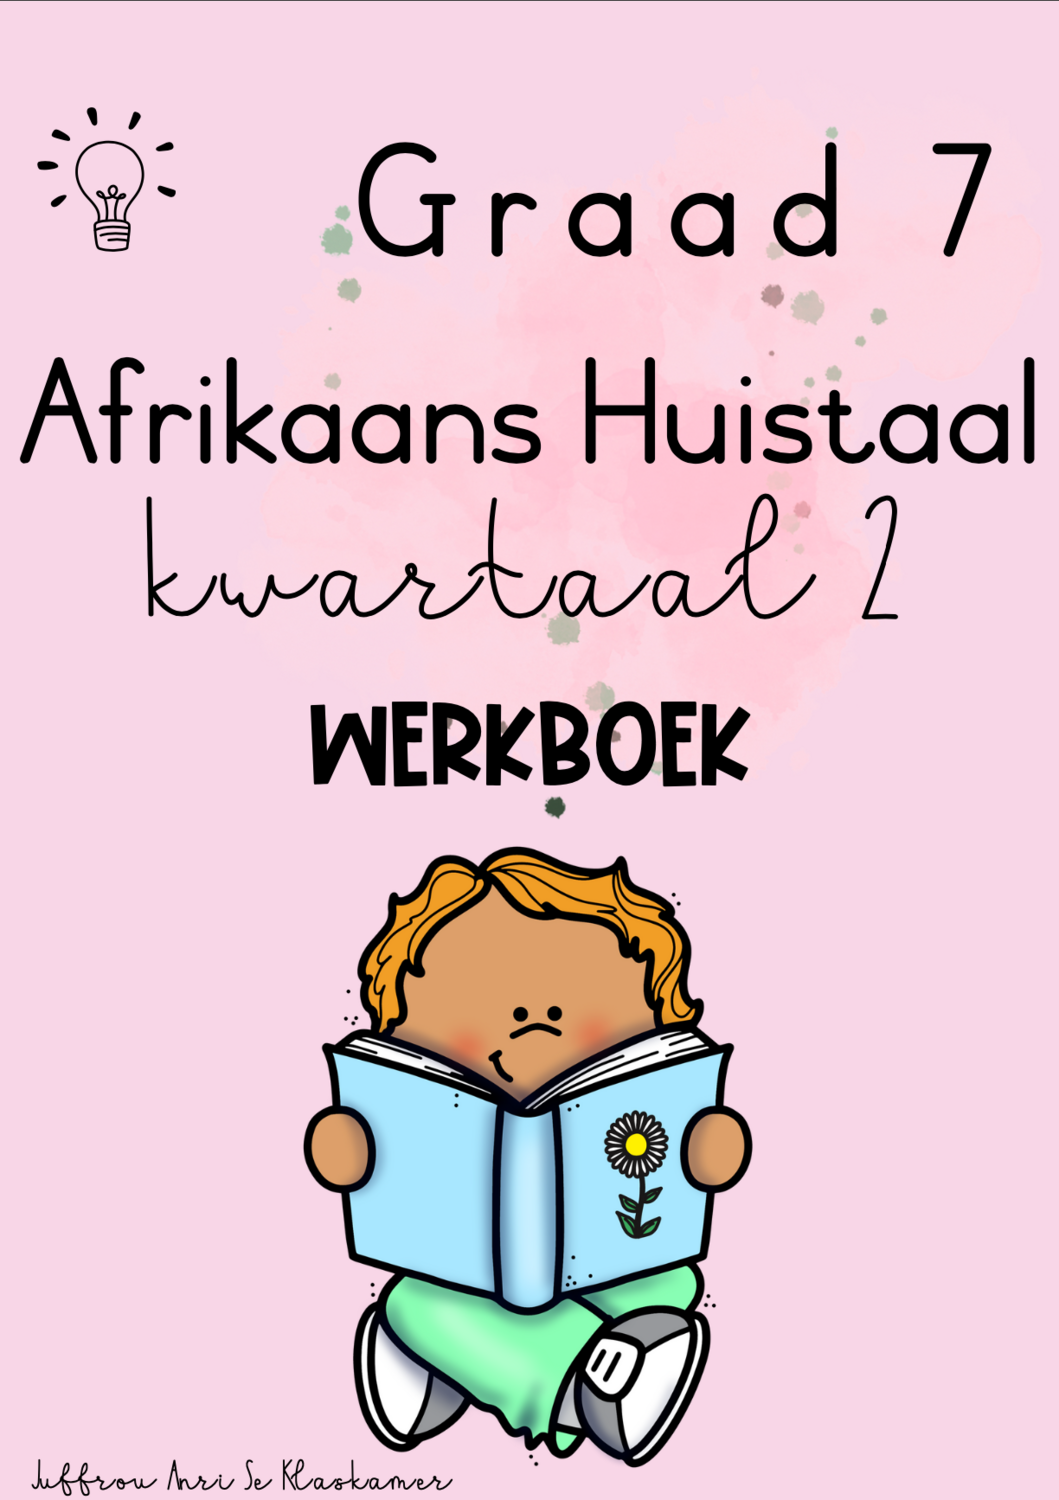 Graad 7 Afrikaans Huistaal kwartaal 2 werkboek